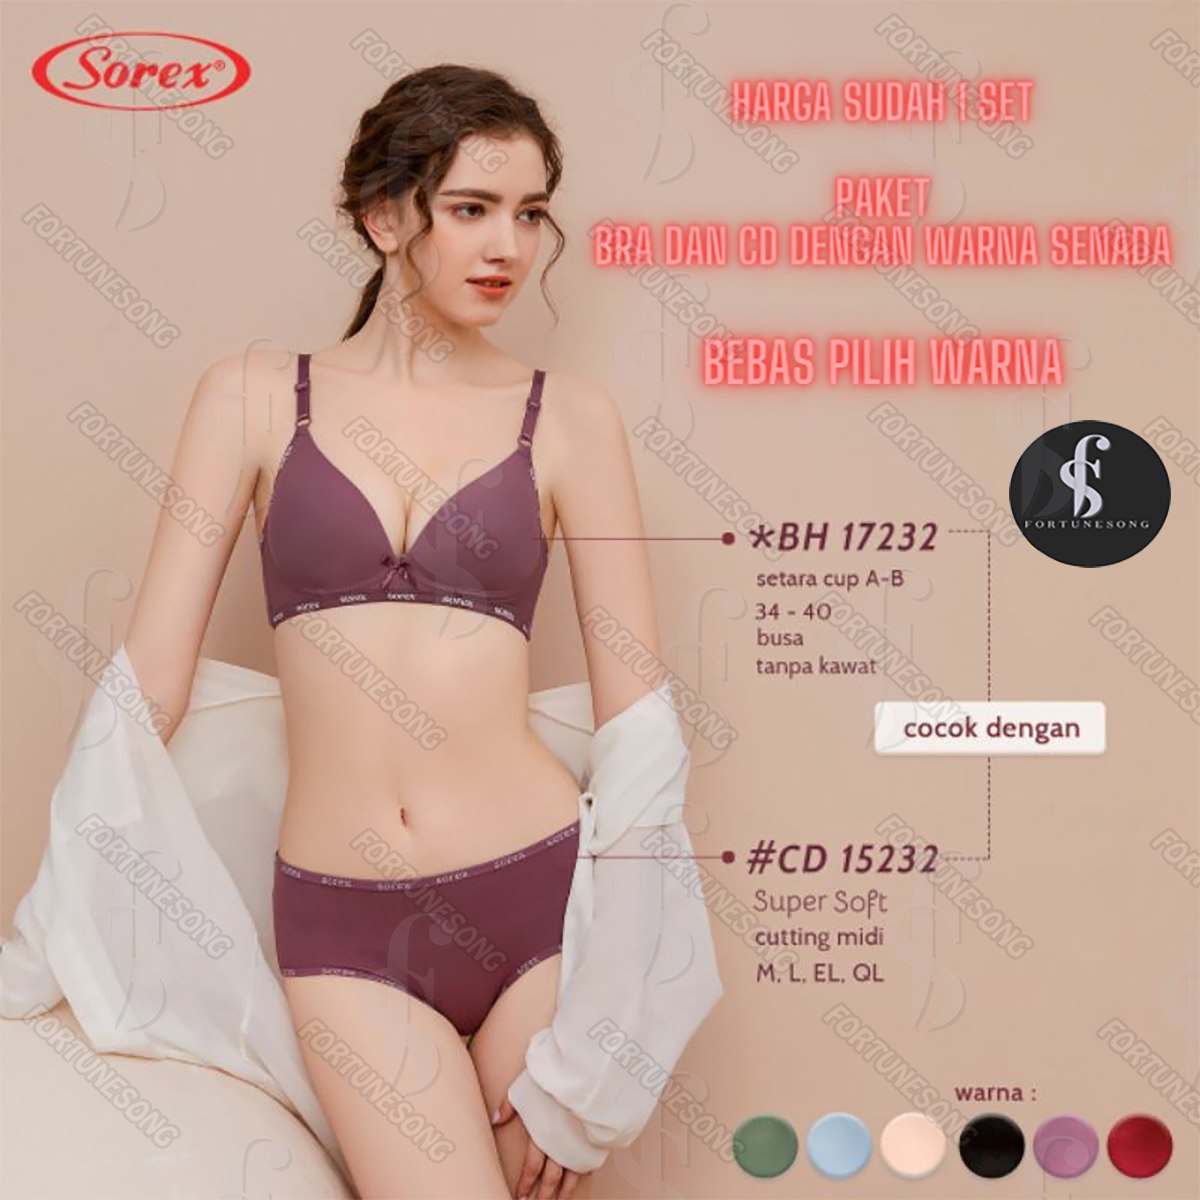 Jual Benefit-Fiona Seamless Set Bra Celana Dalam Wanita - Hitam, M